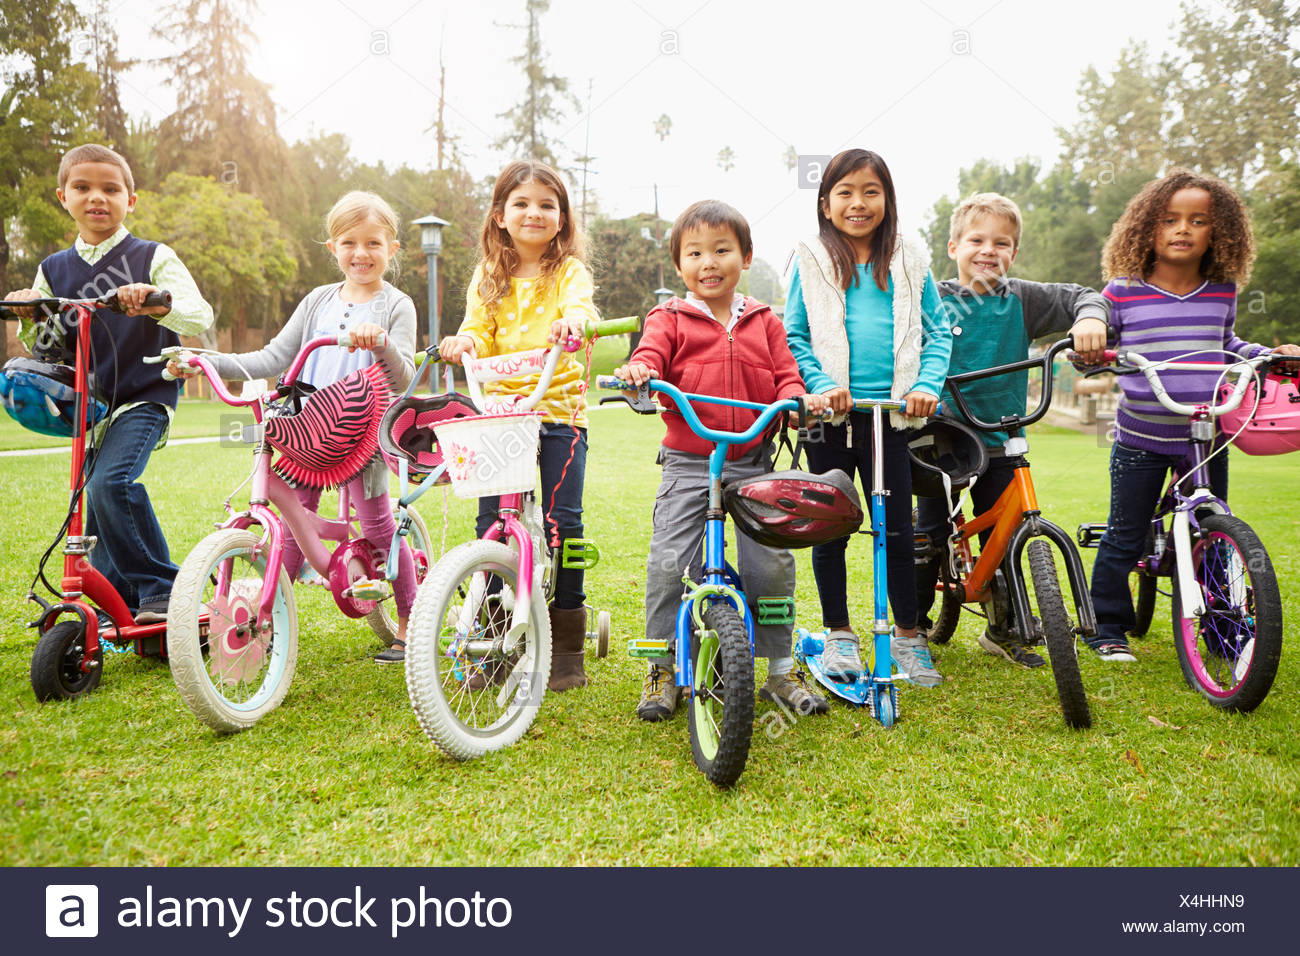 children on bikes